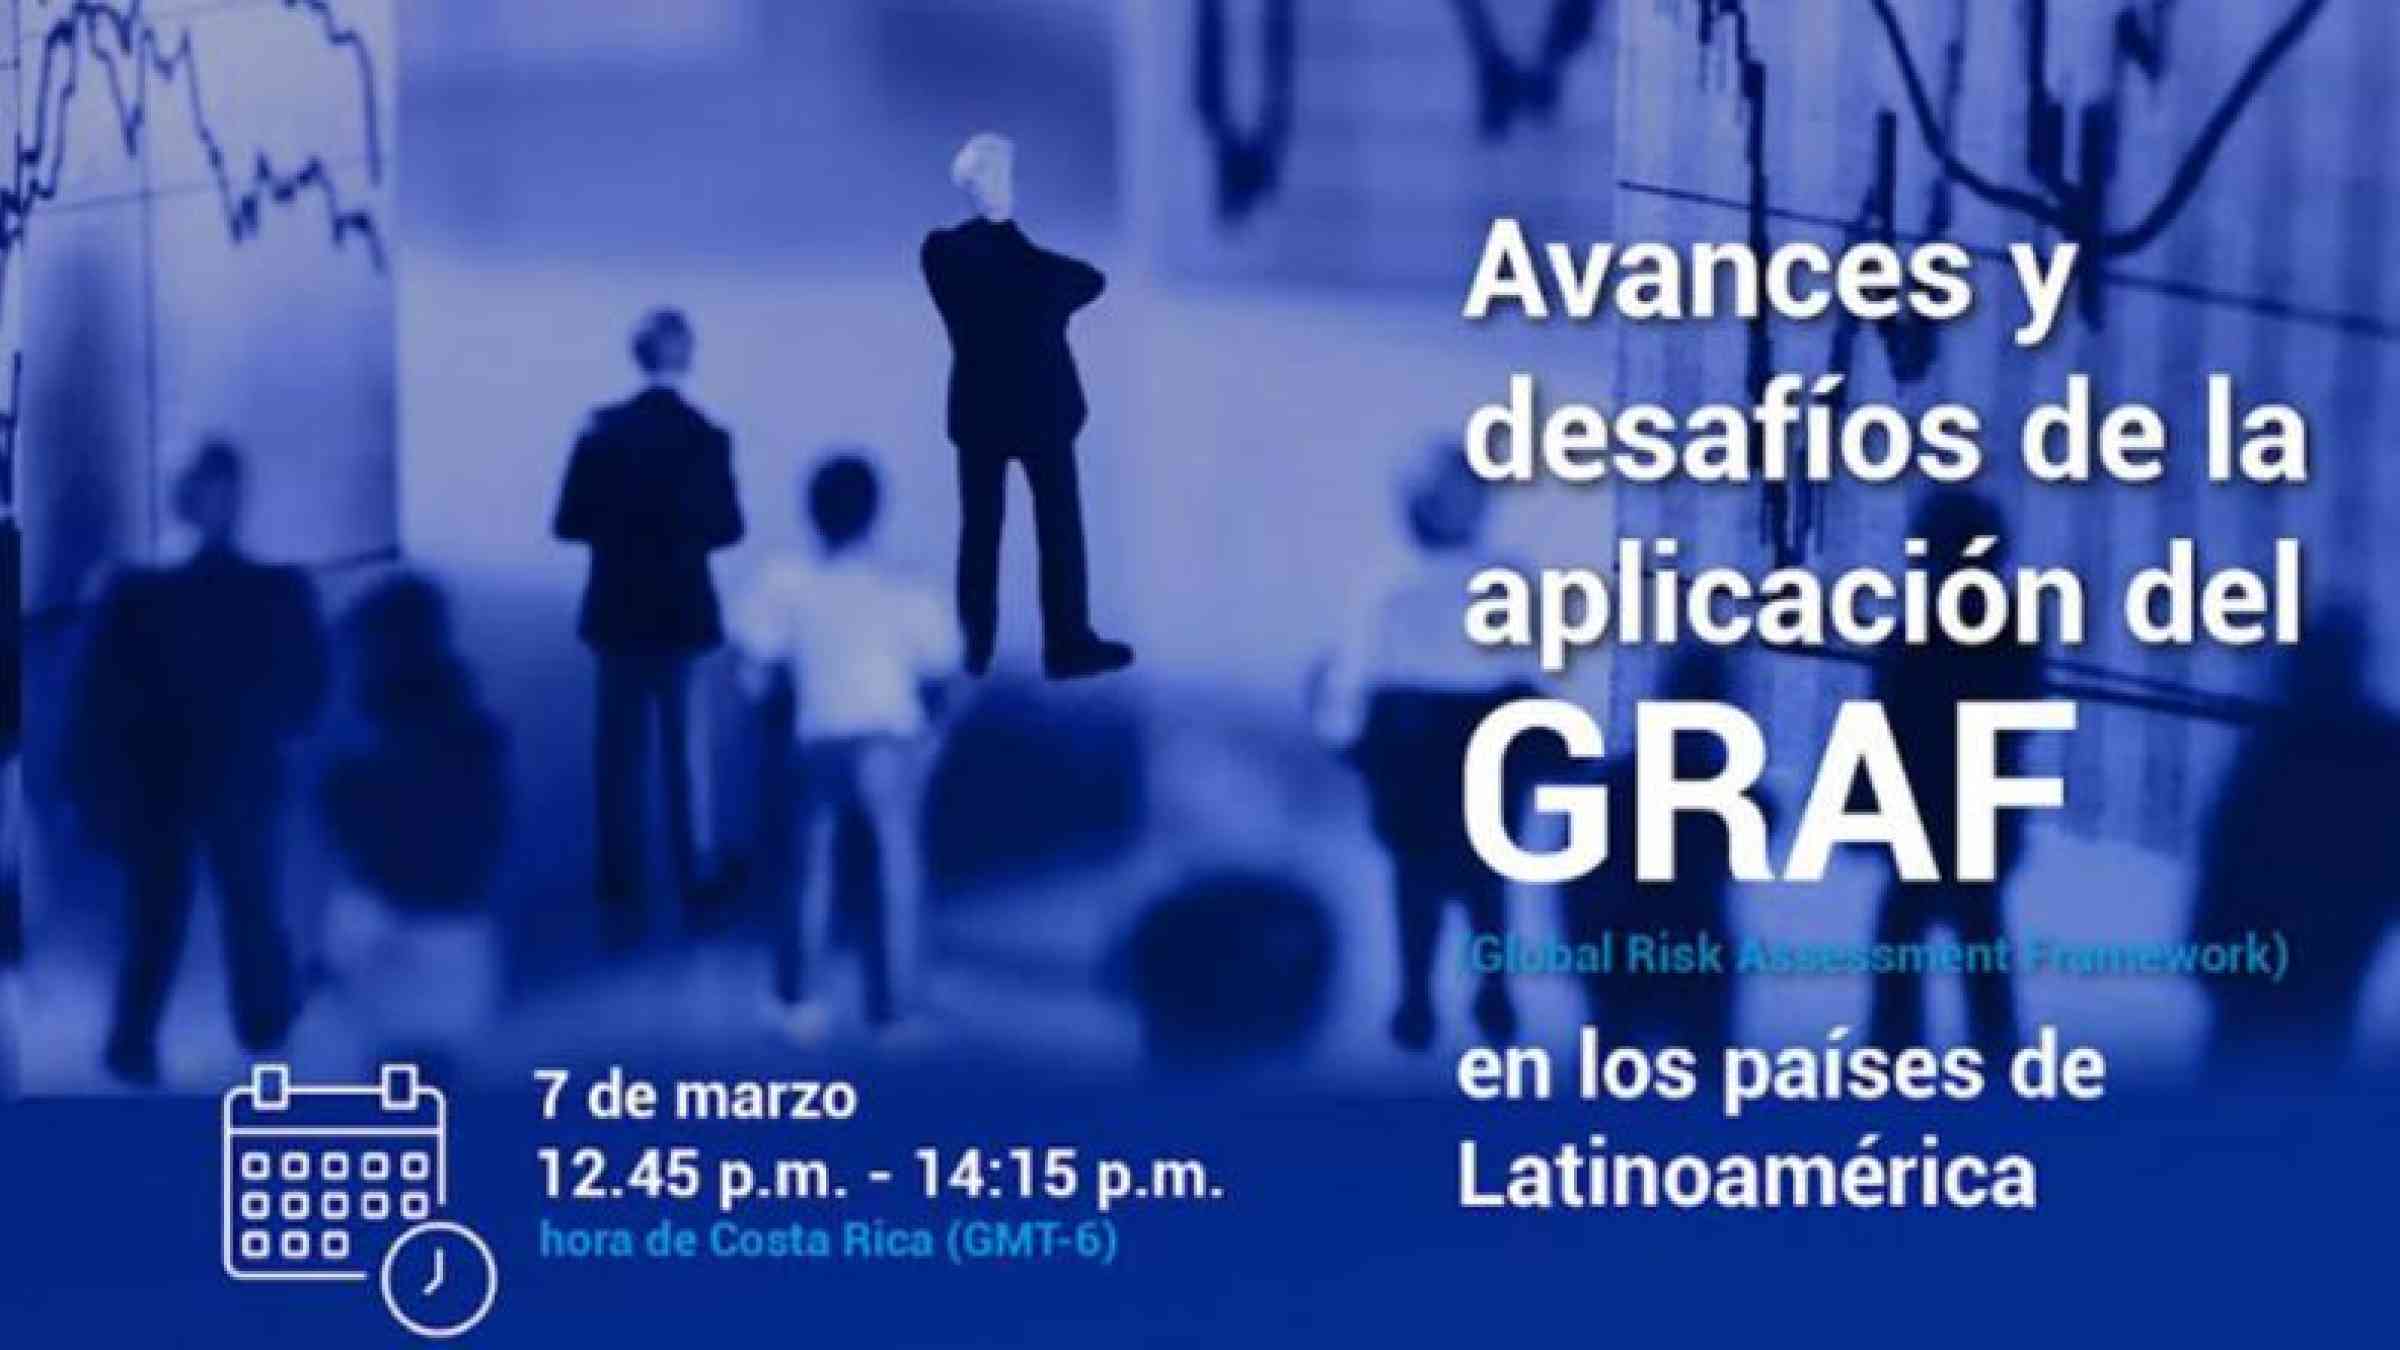 Avances y desafíos de la aplicación del GRAF (Global Risk Assessment Framework) en los países de Latinoamérica